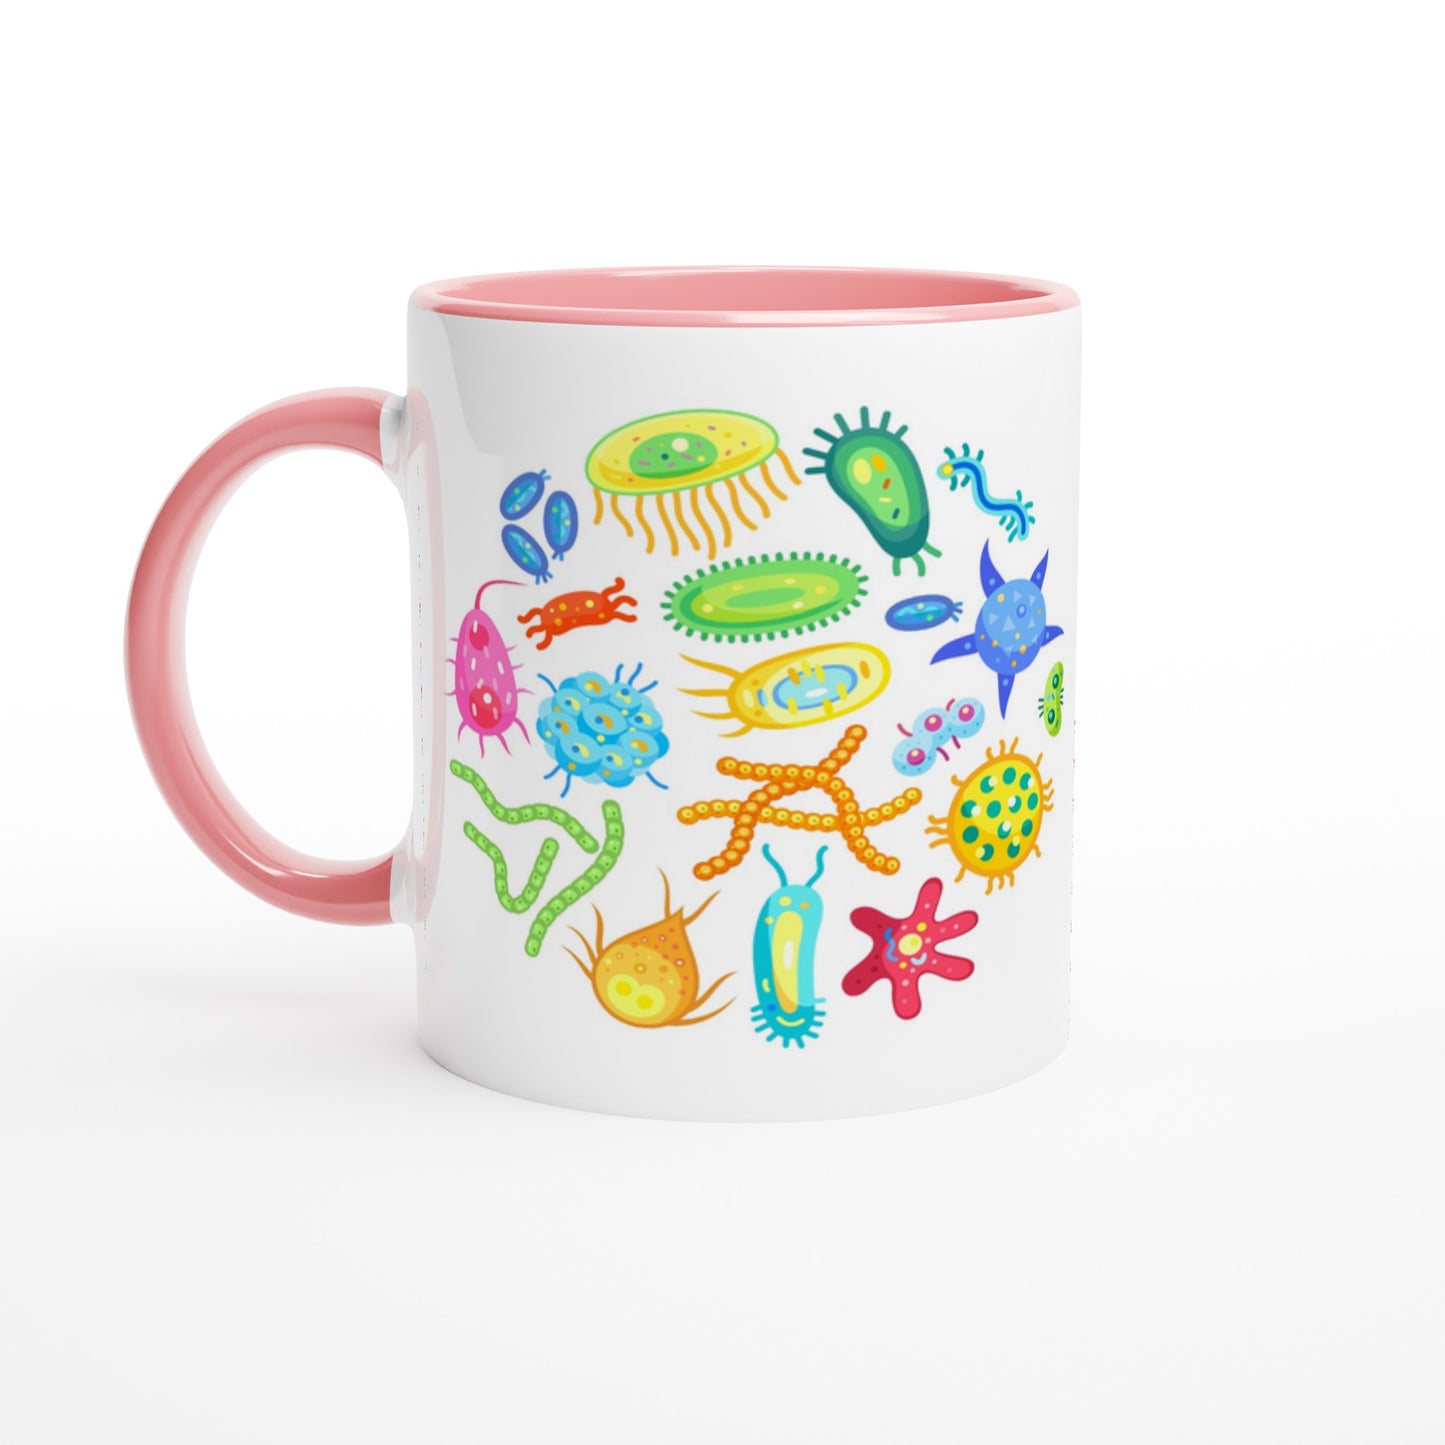 Under The Microscope - White 11oz Ceramic Mug with Colour Inside Ceramic Pink Colour 11oz Mug Science